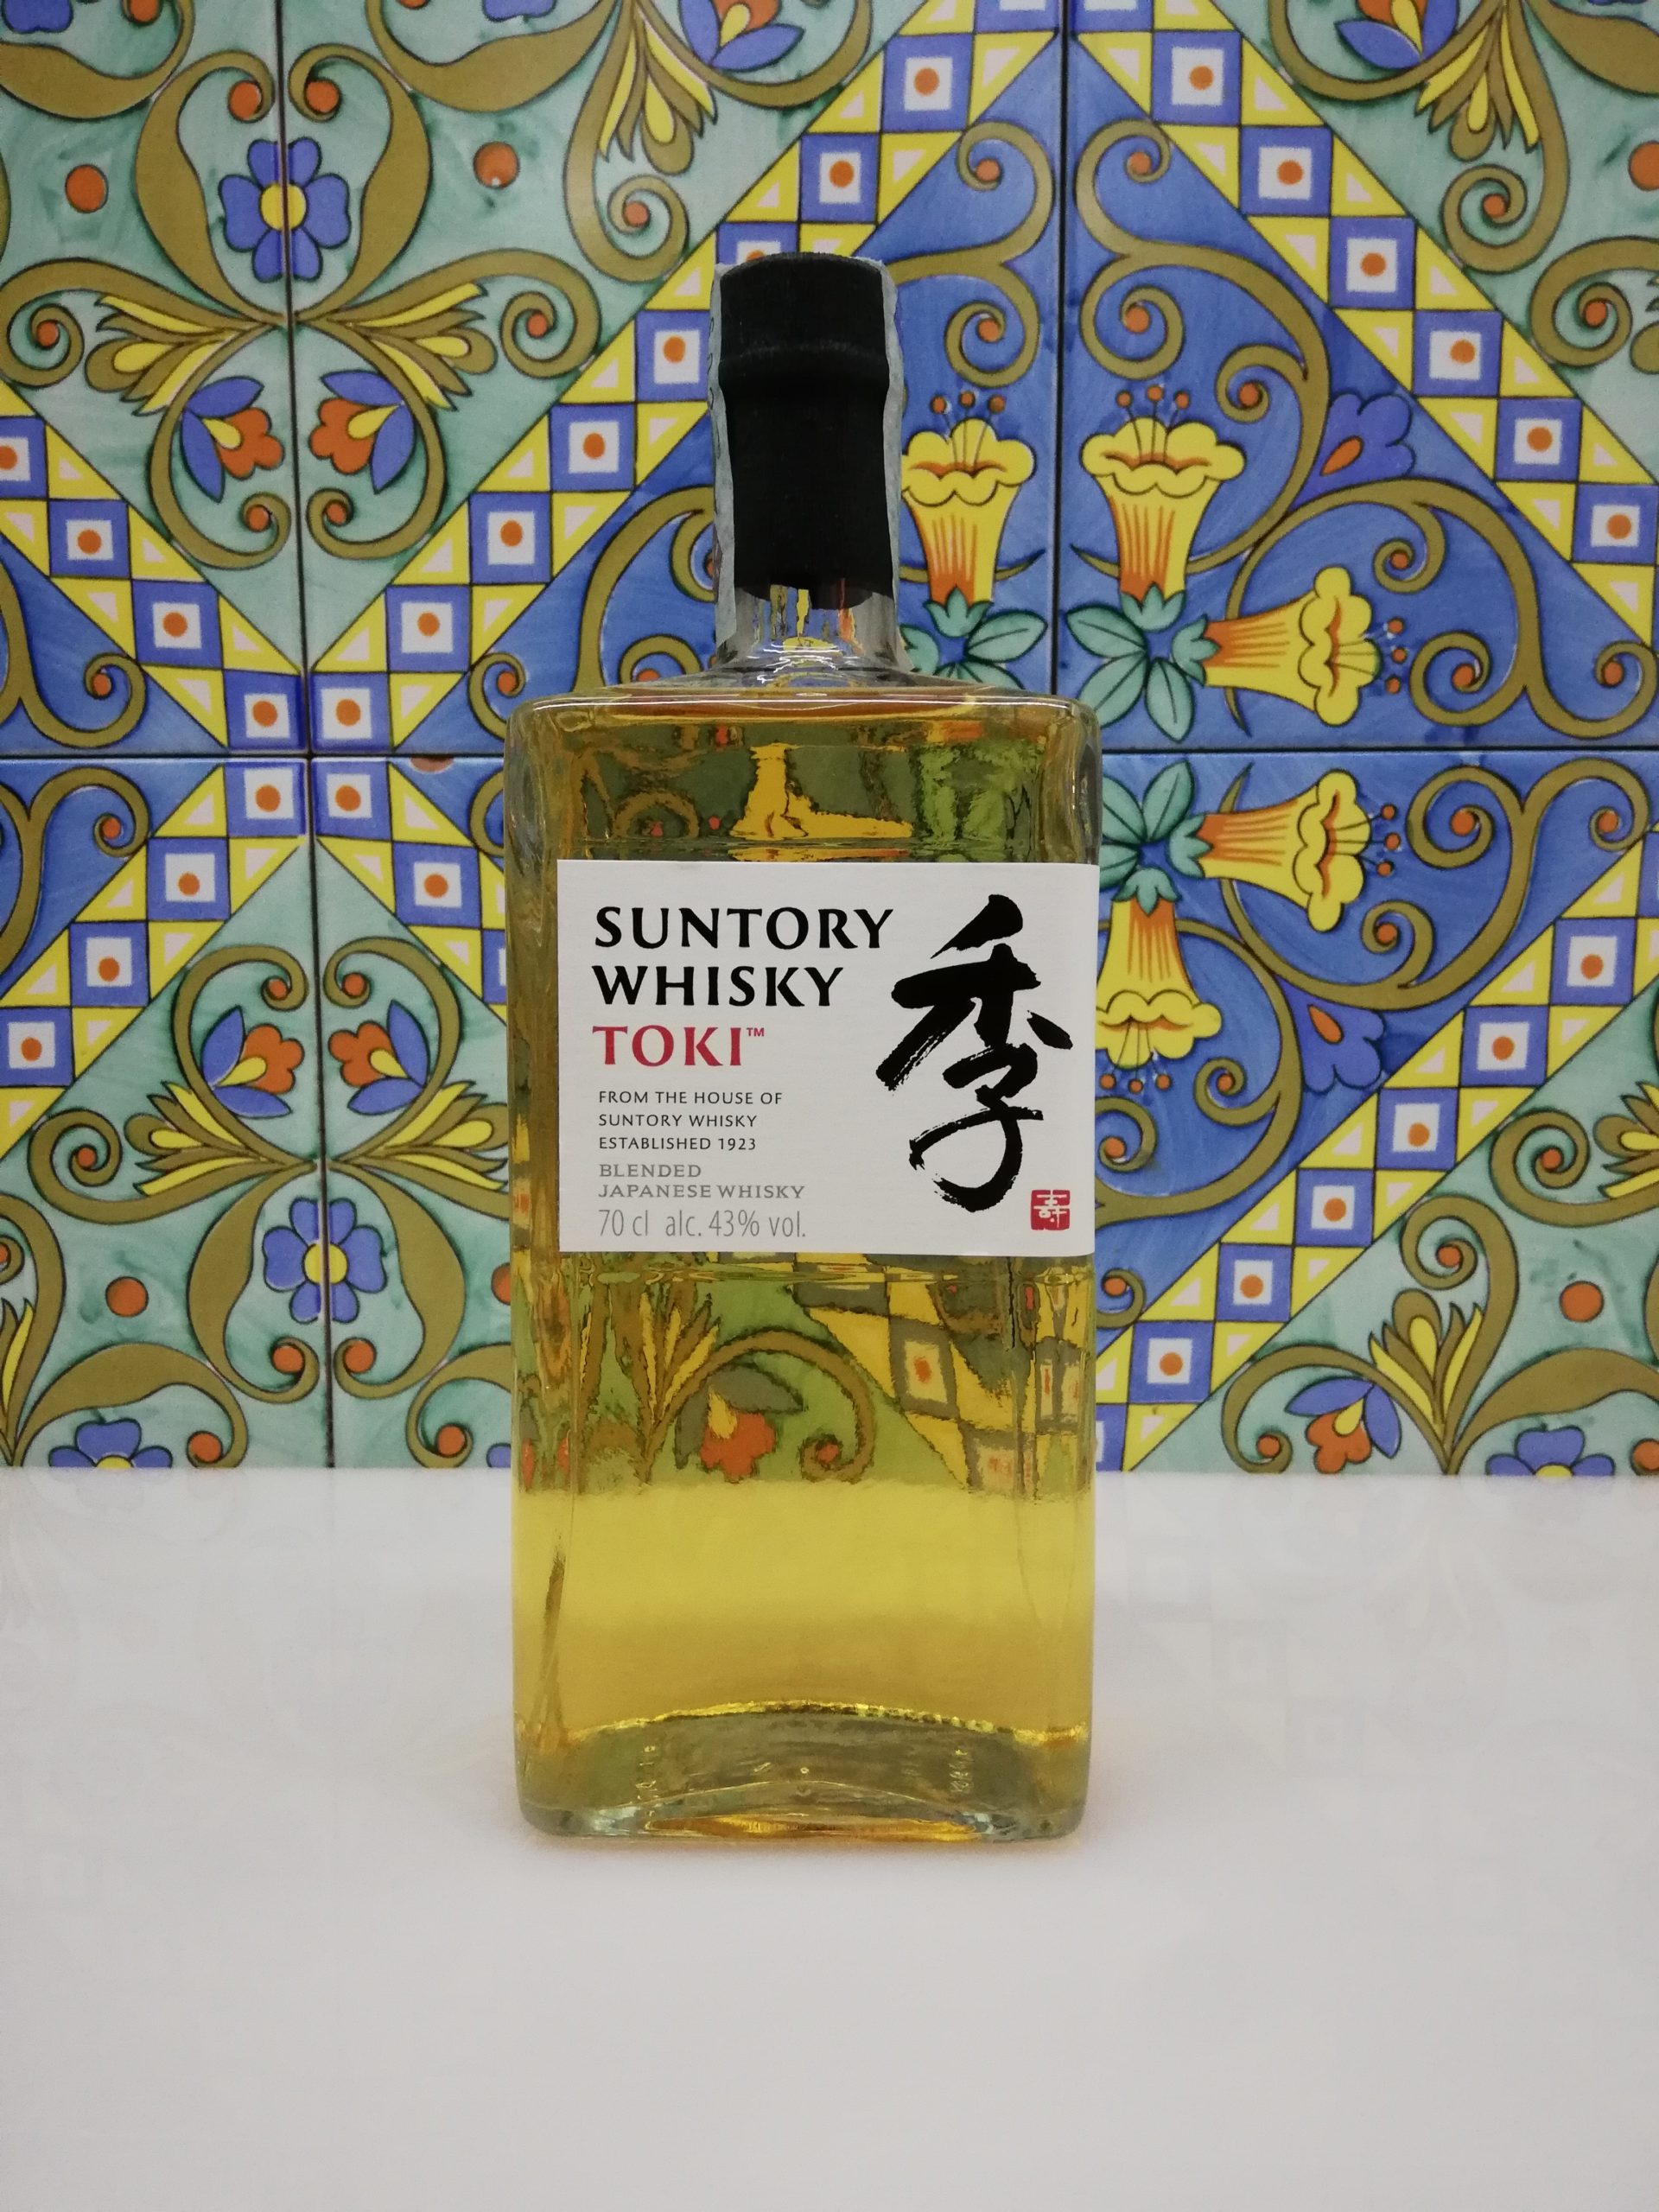 Whisky Toki Suntory Blended Japanese cl 70 vol 43% - Maeba Single Cask | Whisky